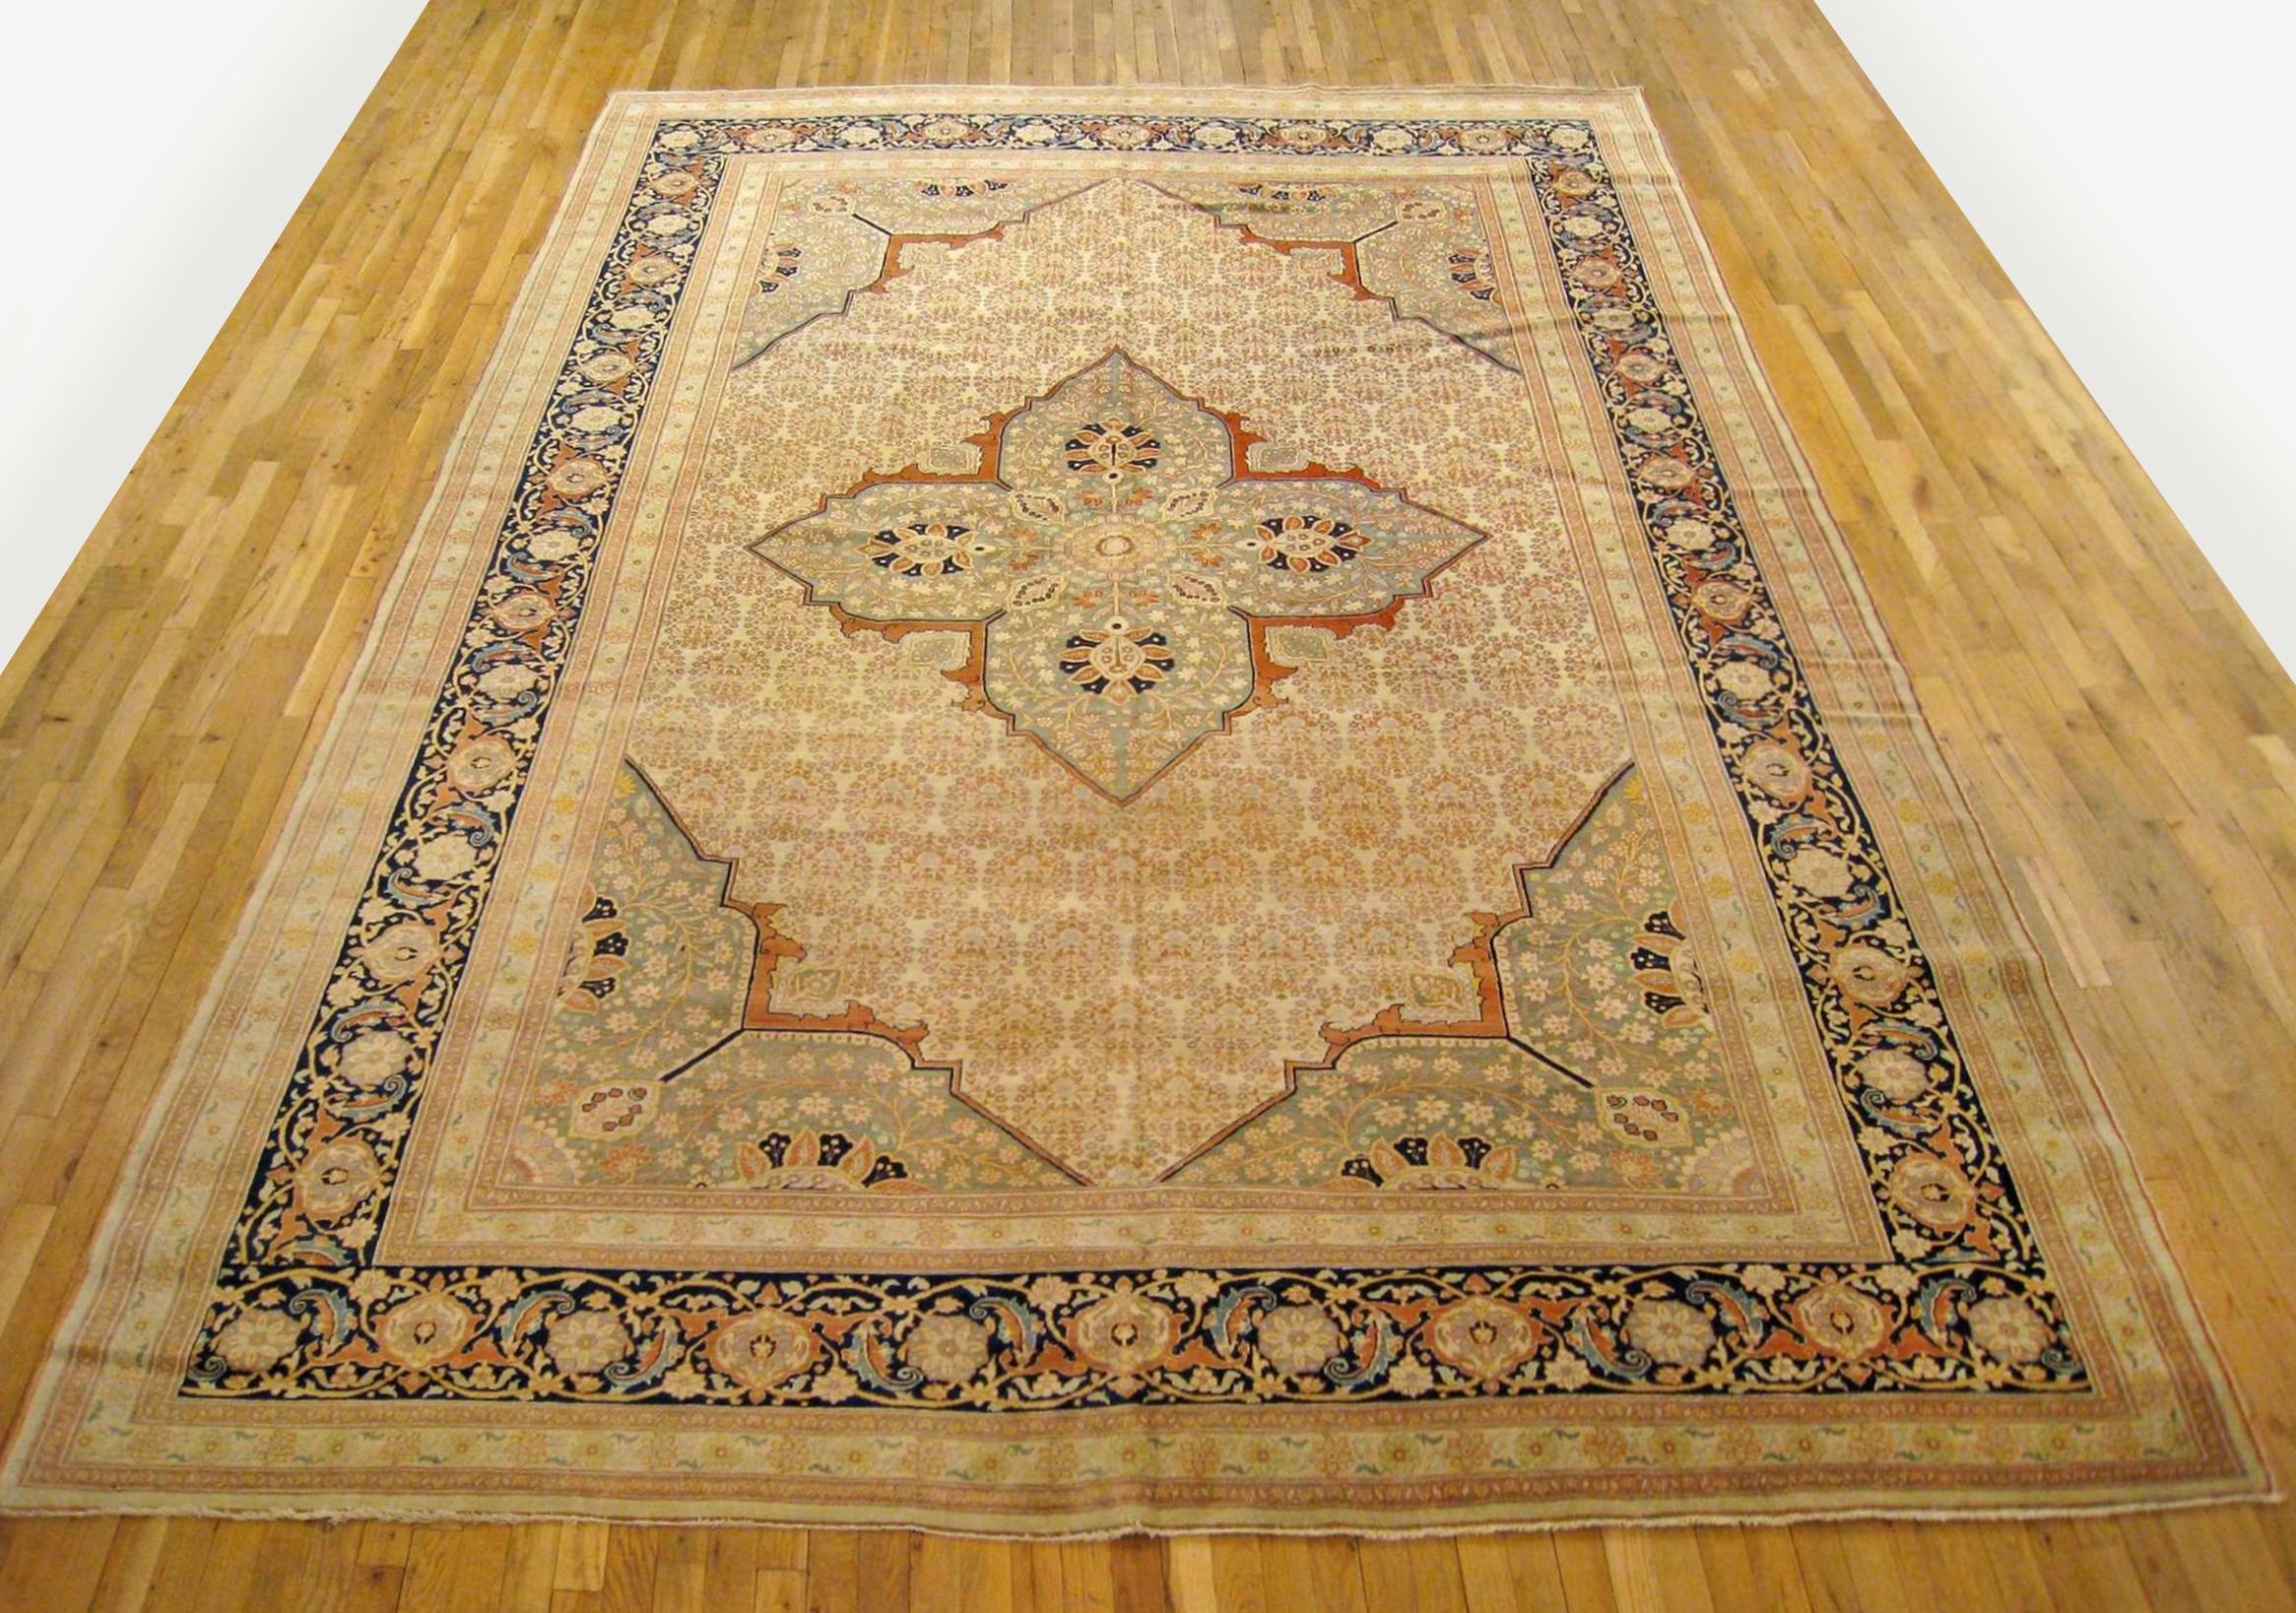 Antique Persian Tabriz Hadji Jalili oriental carpet, circa 1890, room sized.

An antique Persian Tabriz Hadji Jalili oriental carpet, circa 1890. Size: 13'4